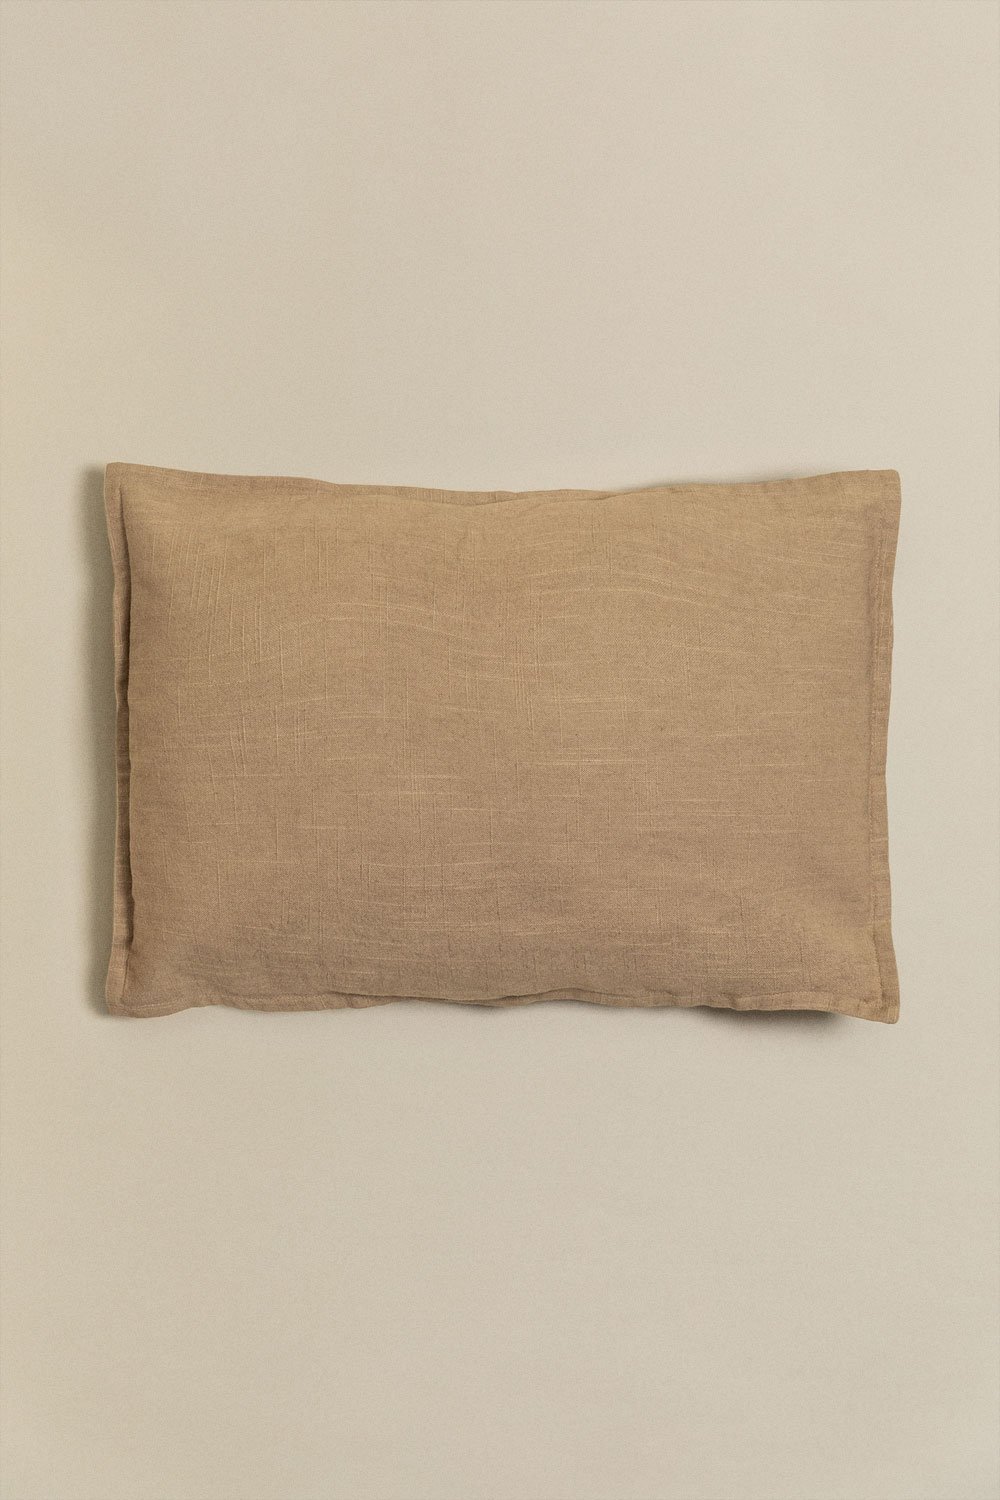 Cuscino rettangolare in cotone (35x50 cm) Guillaume, immagine della galleria 1